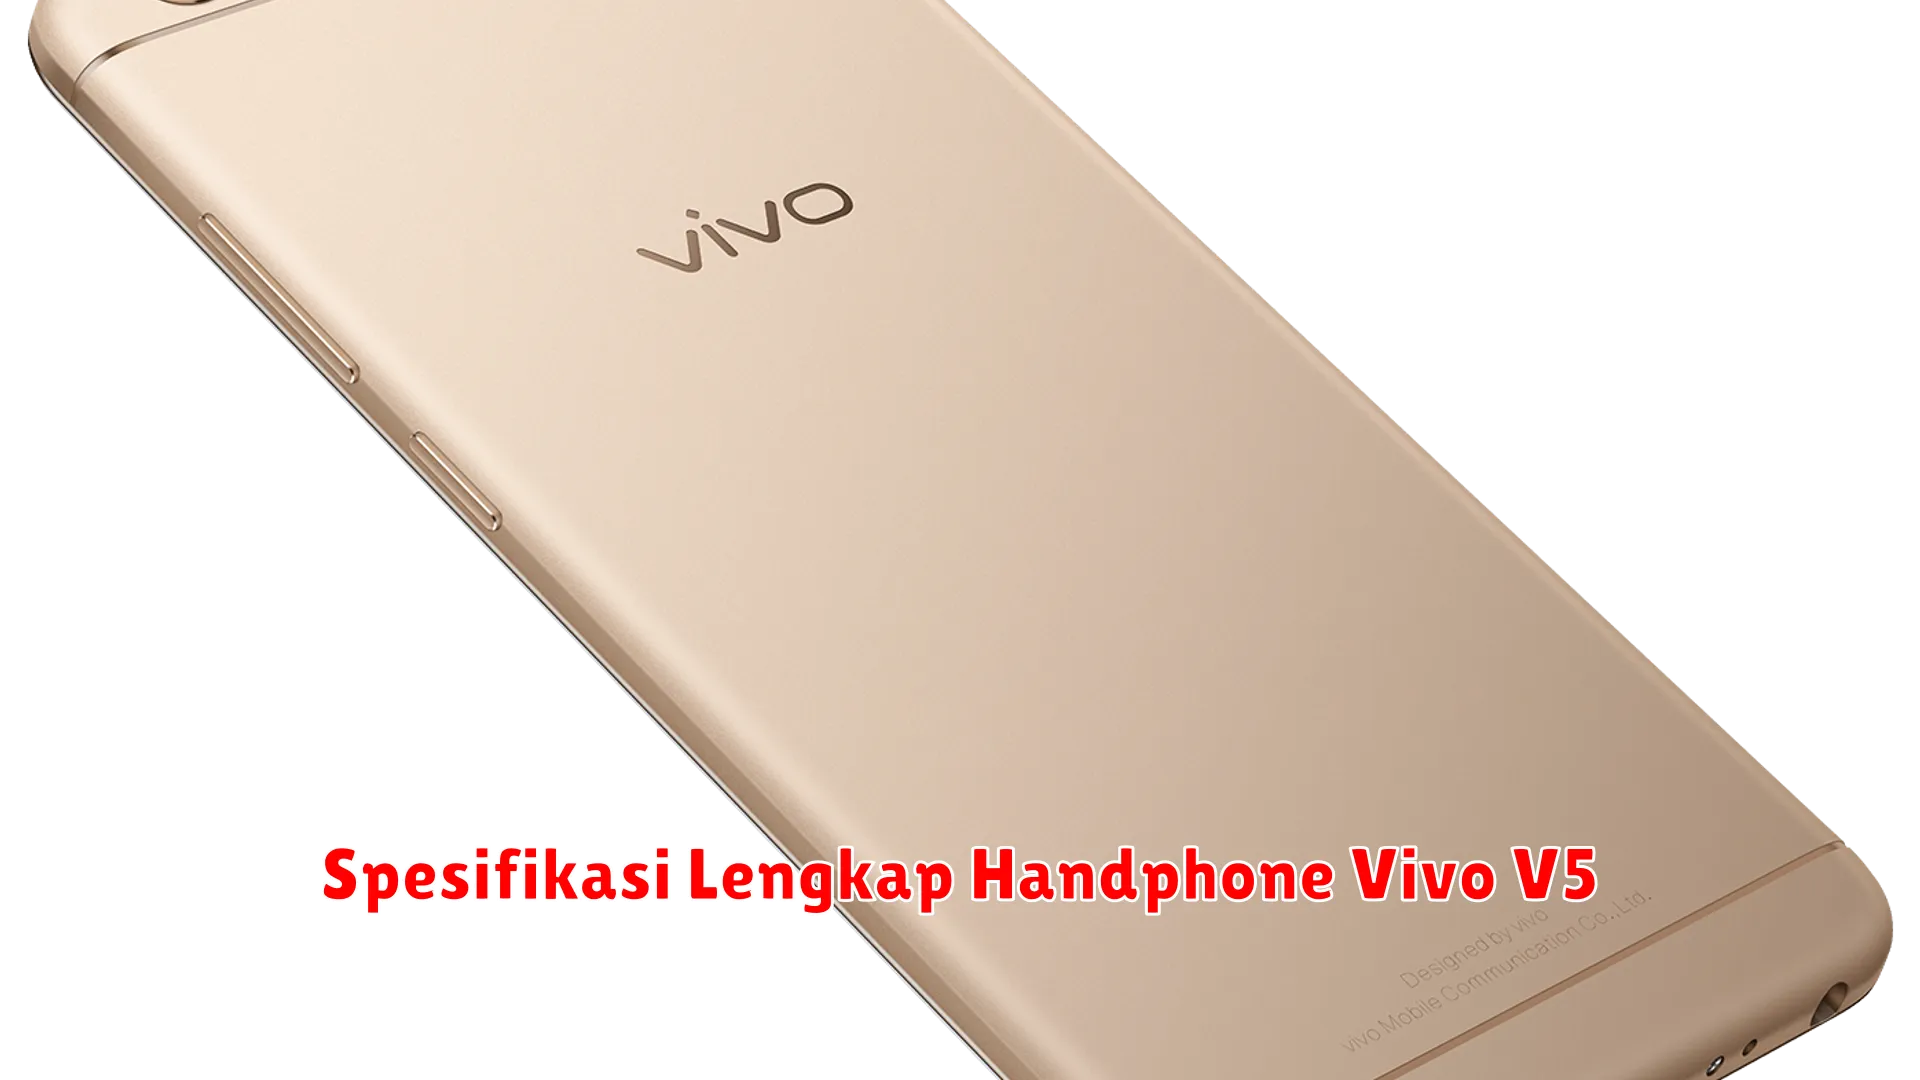 Spesifikasi Lengkap Handphone Vivo V5